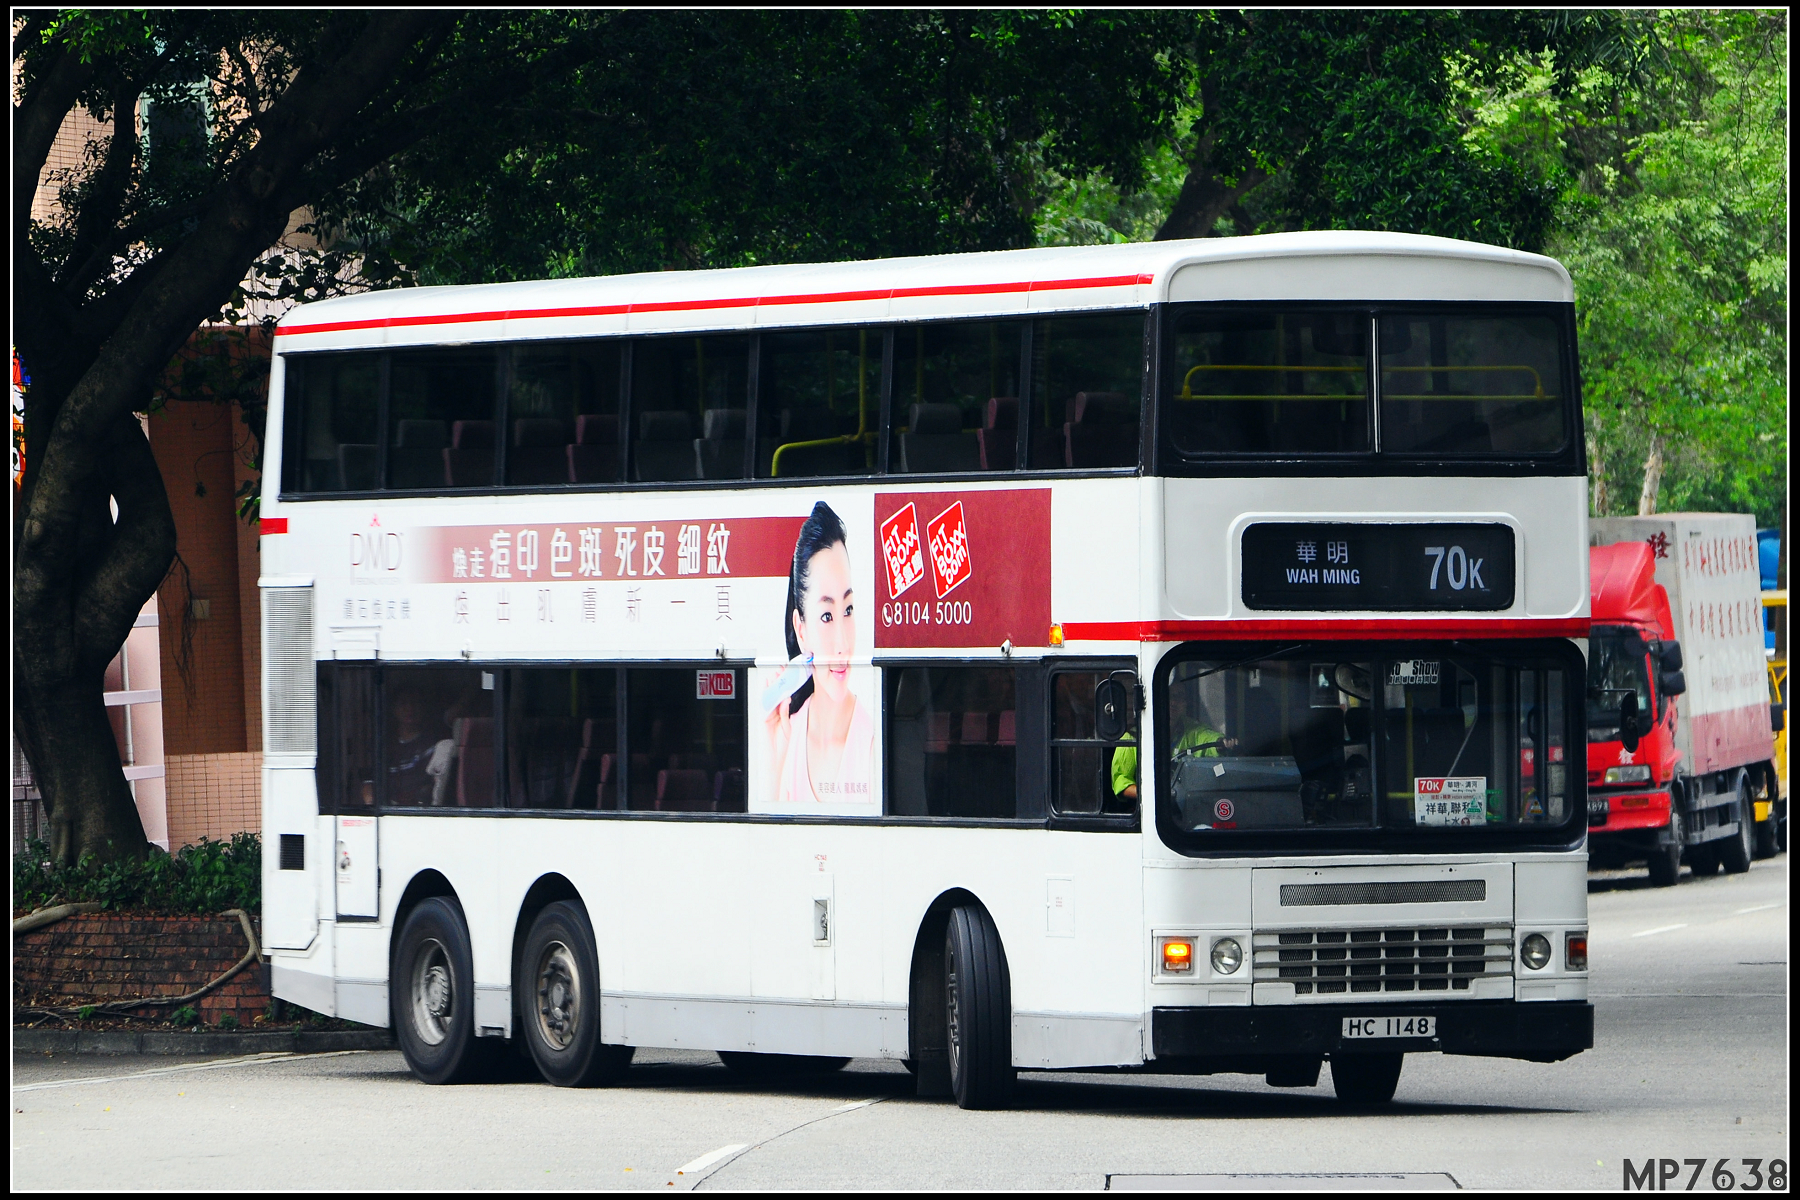 B9TL 70K - 巴士攝影作品貼圖區 (B3) - hkitalk.net 香港交通資訊網 - Powered by Discuz!